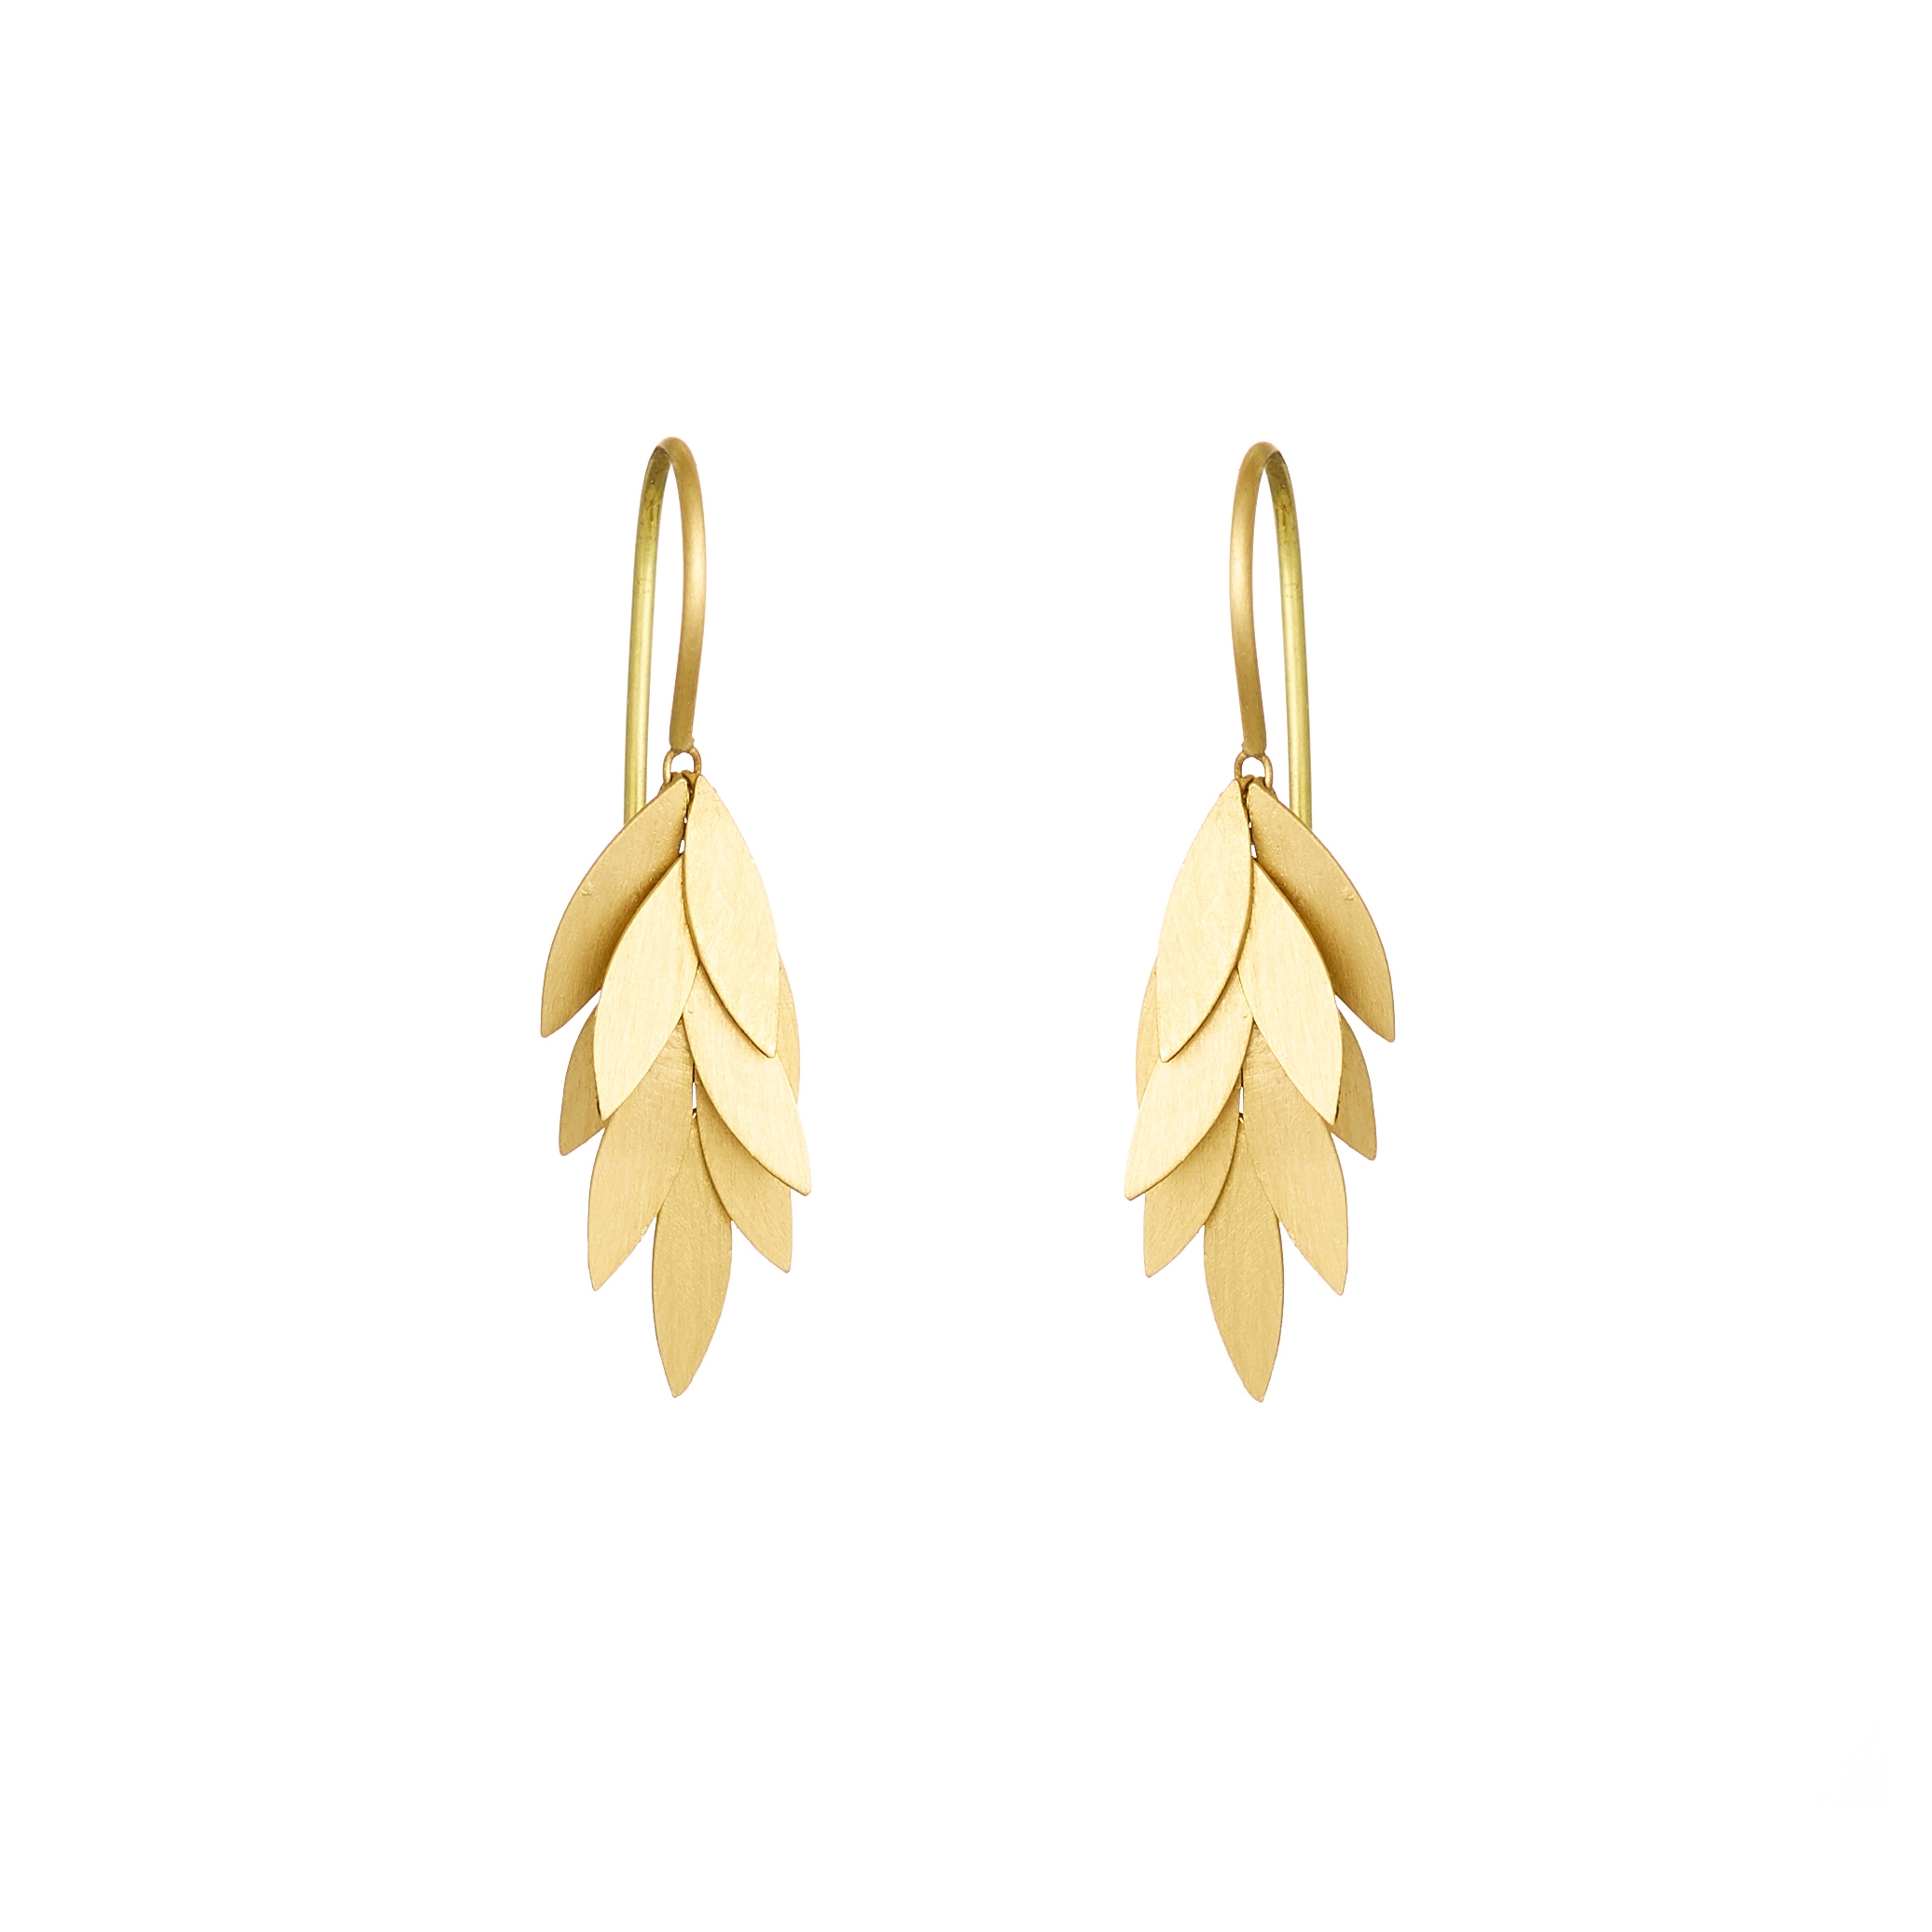 Copper Oak Leaf Earrings, Small – Stacey Lamothe Art